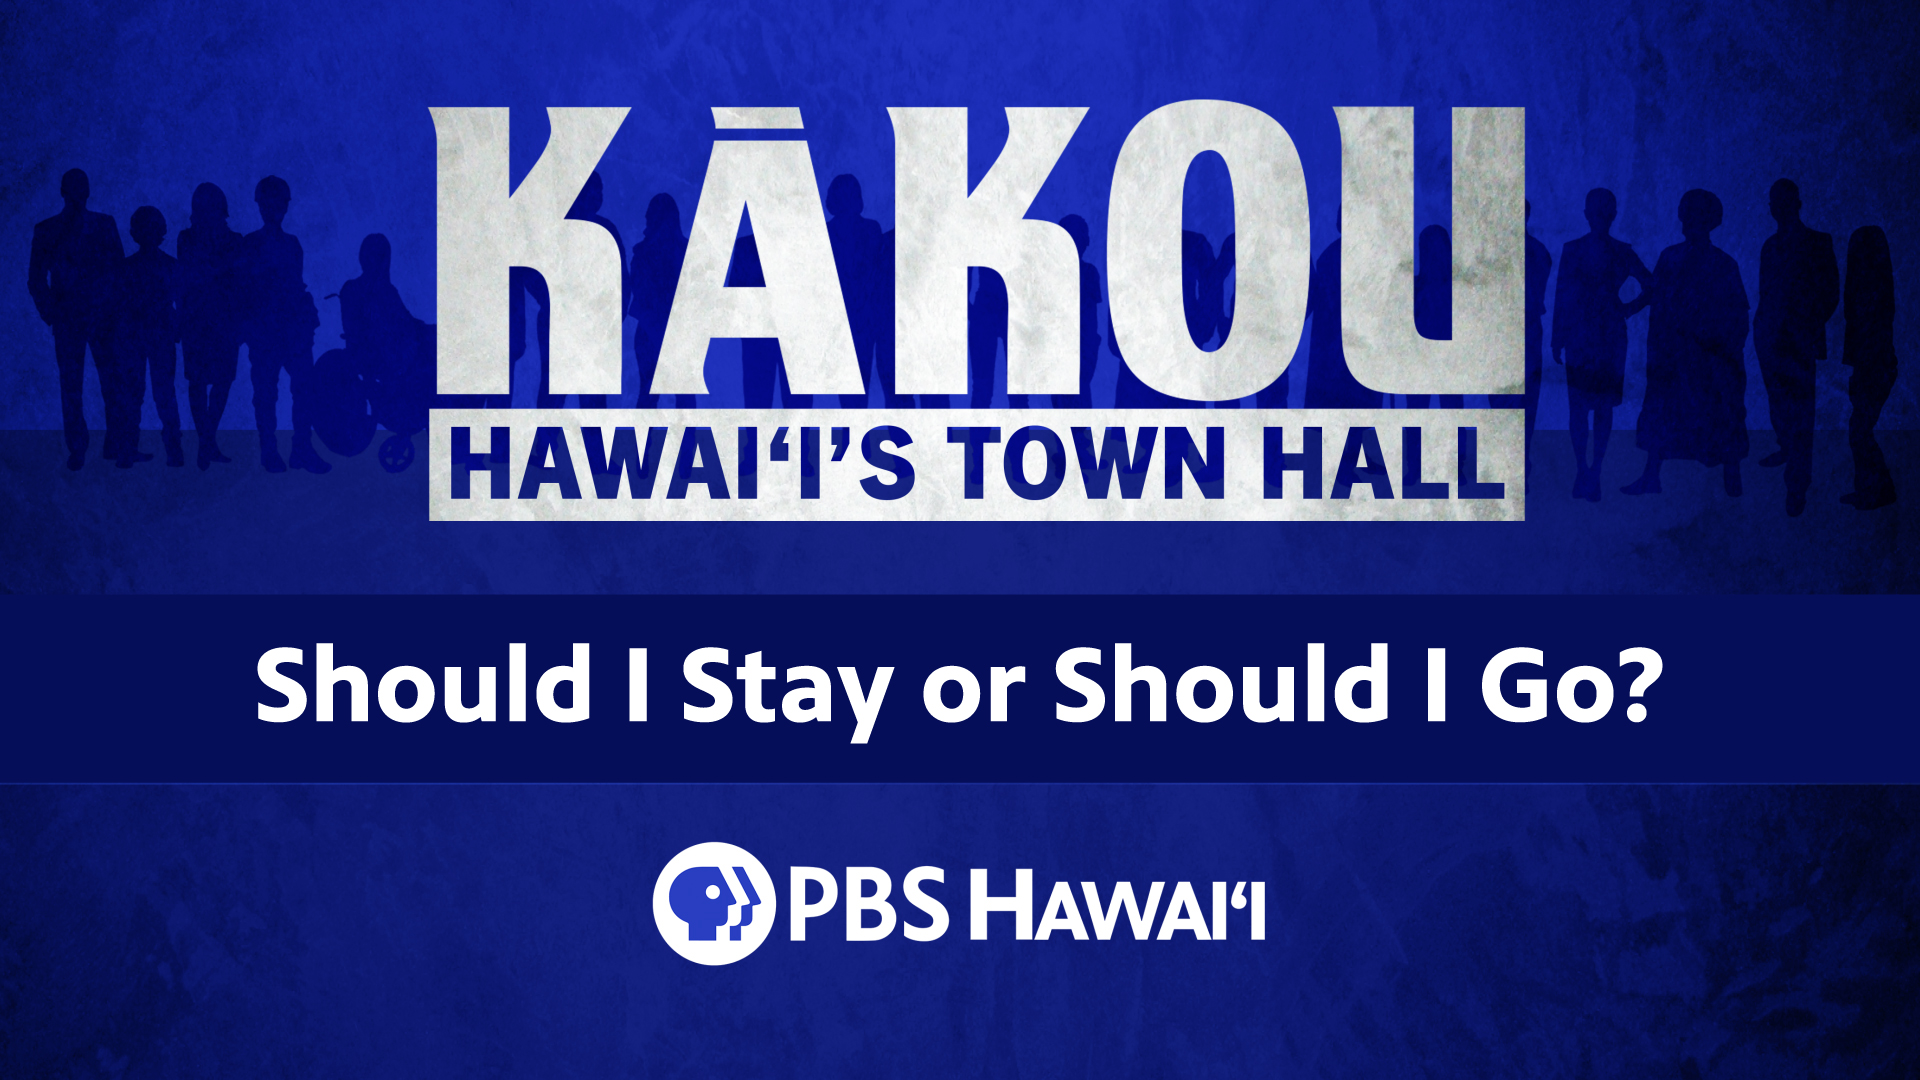 KĀKOU: Hawaiʻi’s Town Hall <br/>Should I Stay or Should I Go?